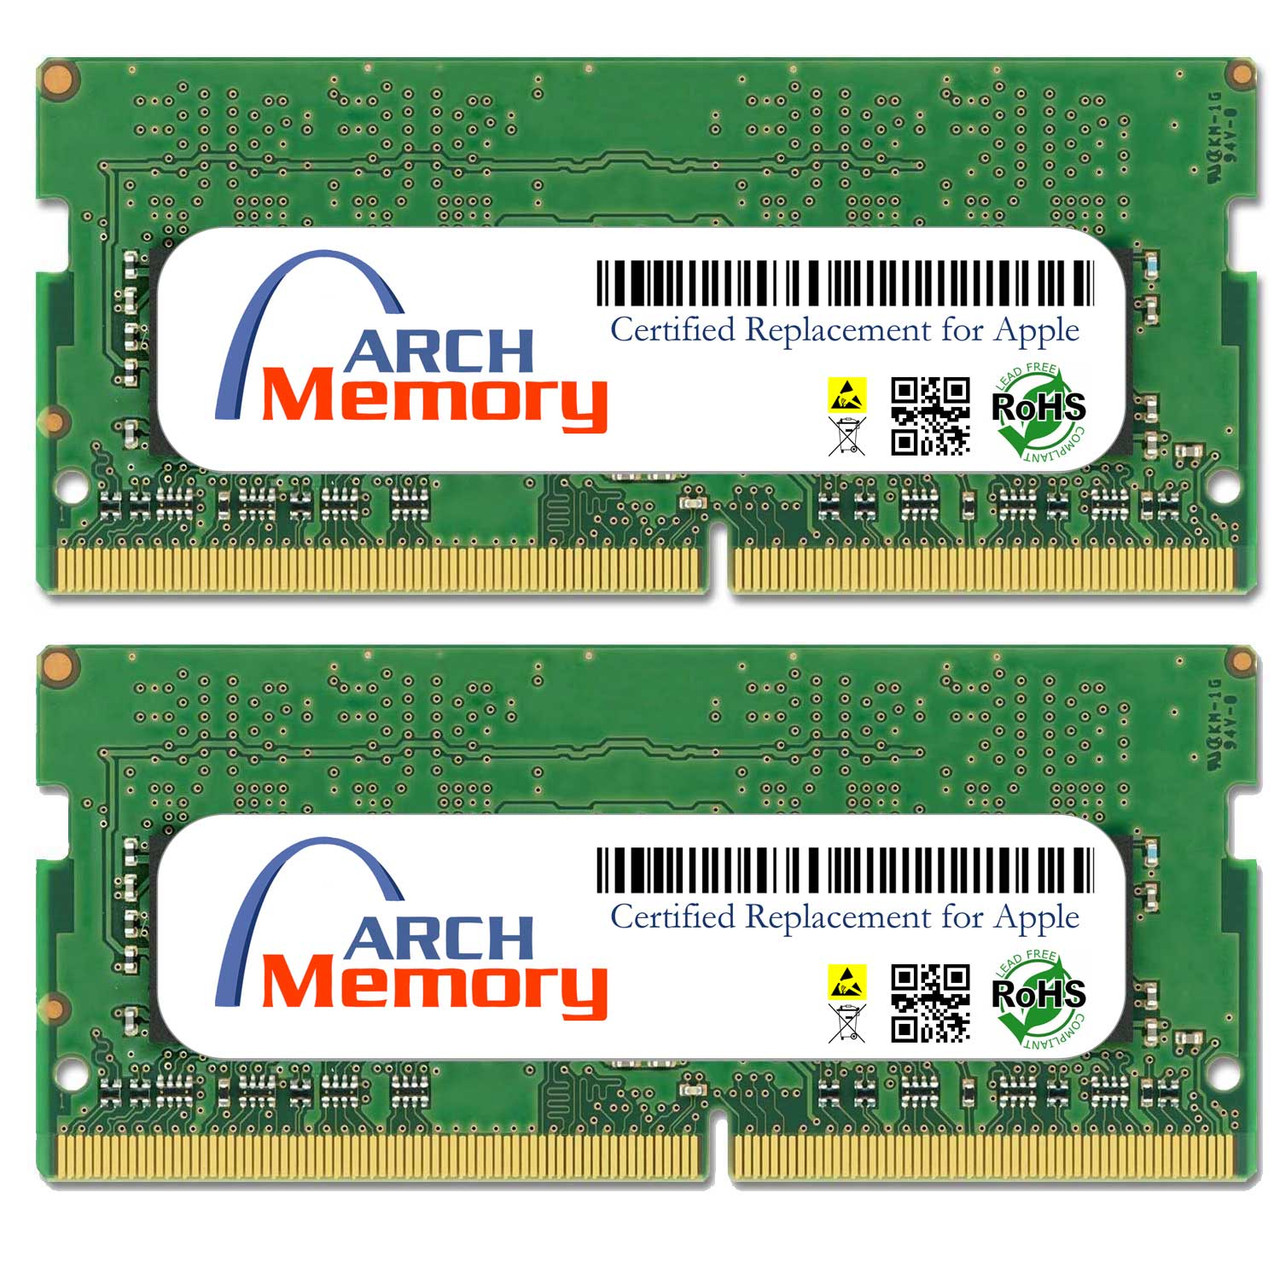 eBay*16GB Kit MP7M2G/A (2 x 8GB) 260-Pin DDR4 So-dimm RAM